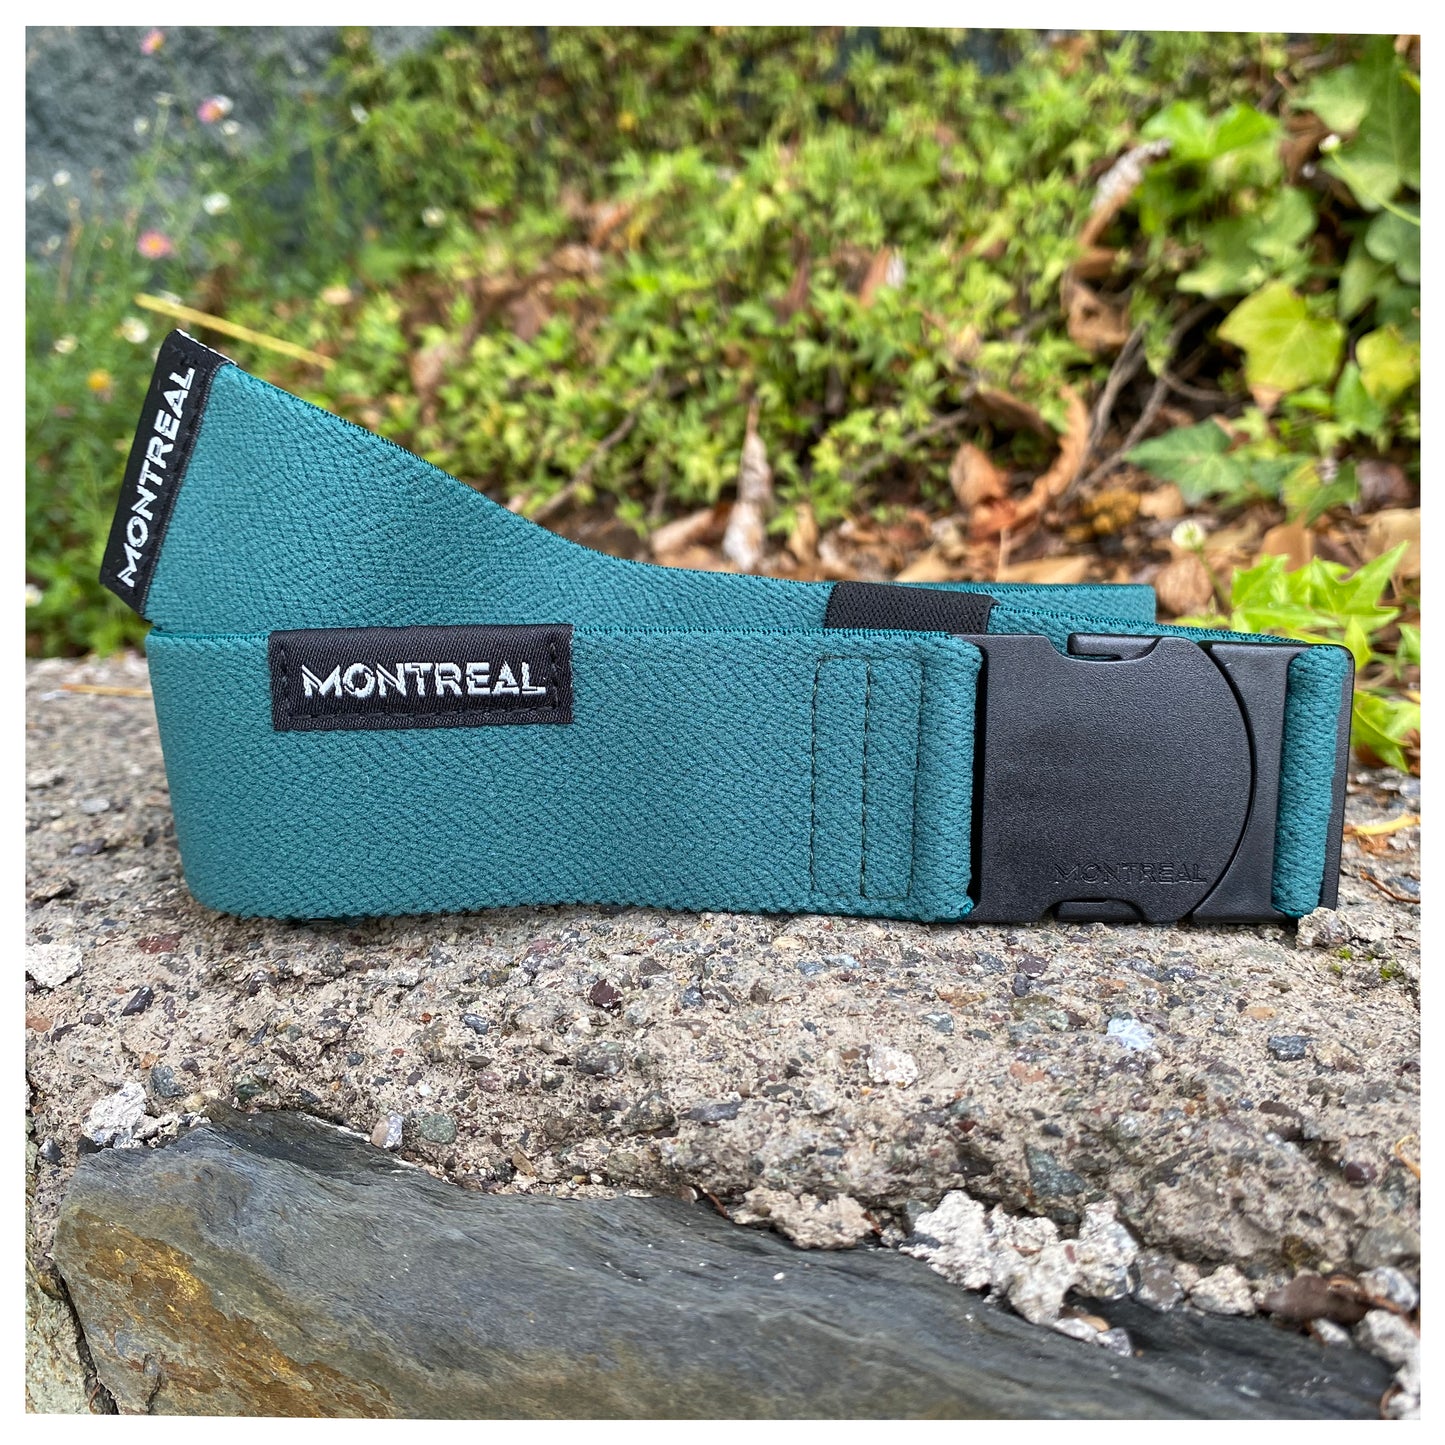 Cinturón elástico, stretch, Montreal, Verde.